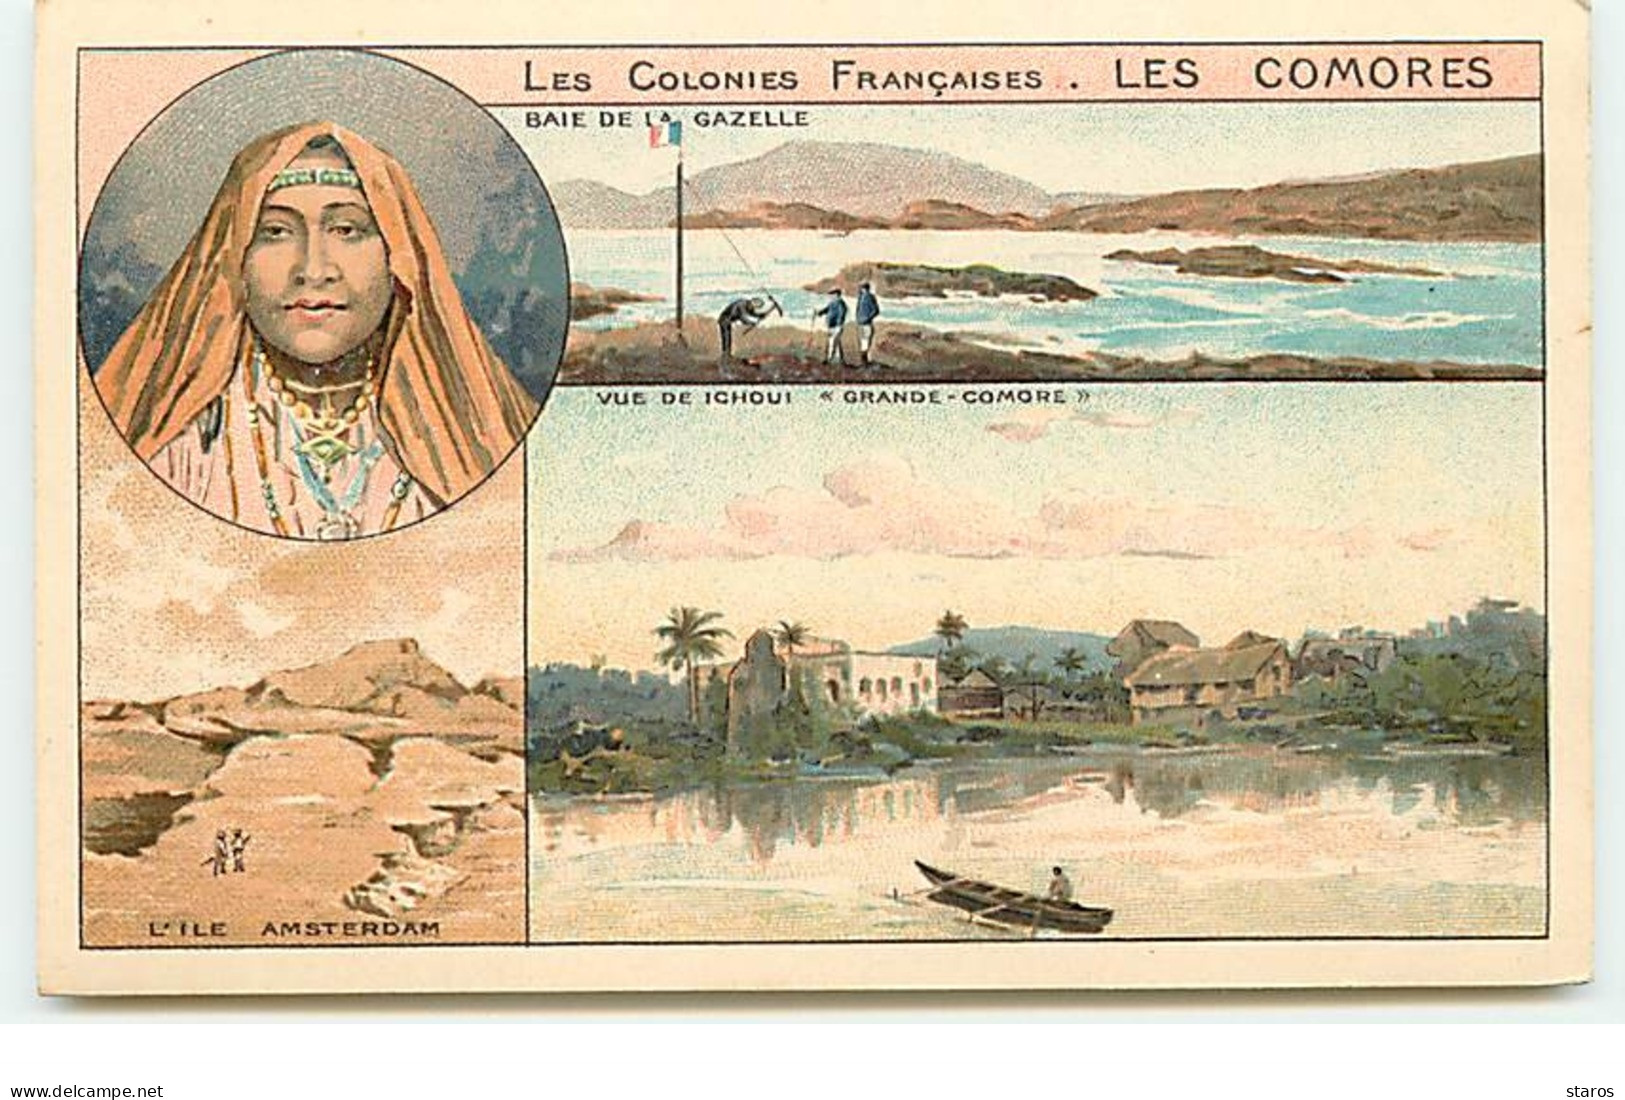 Les Colonies Françaises : Les Comores - Baie De La Gazelle (Multi-vues) - Publicité Phoscao - Comorre